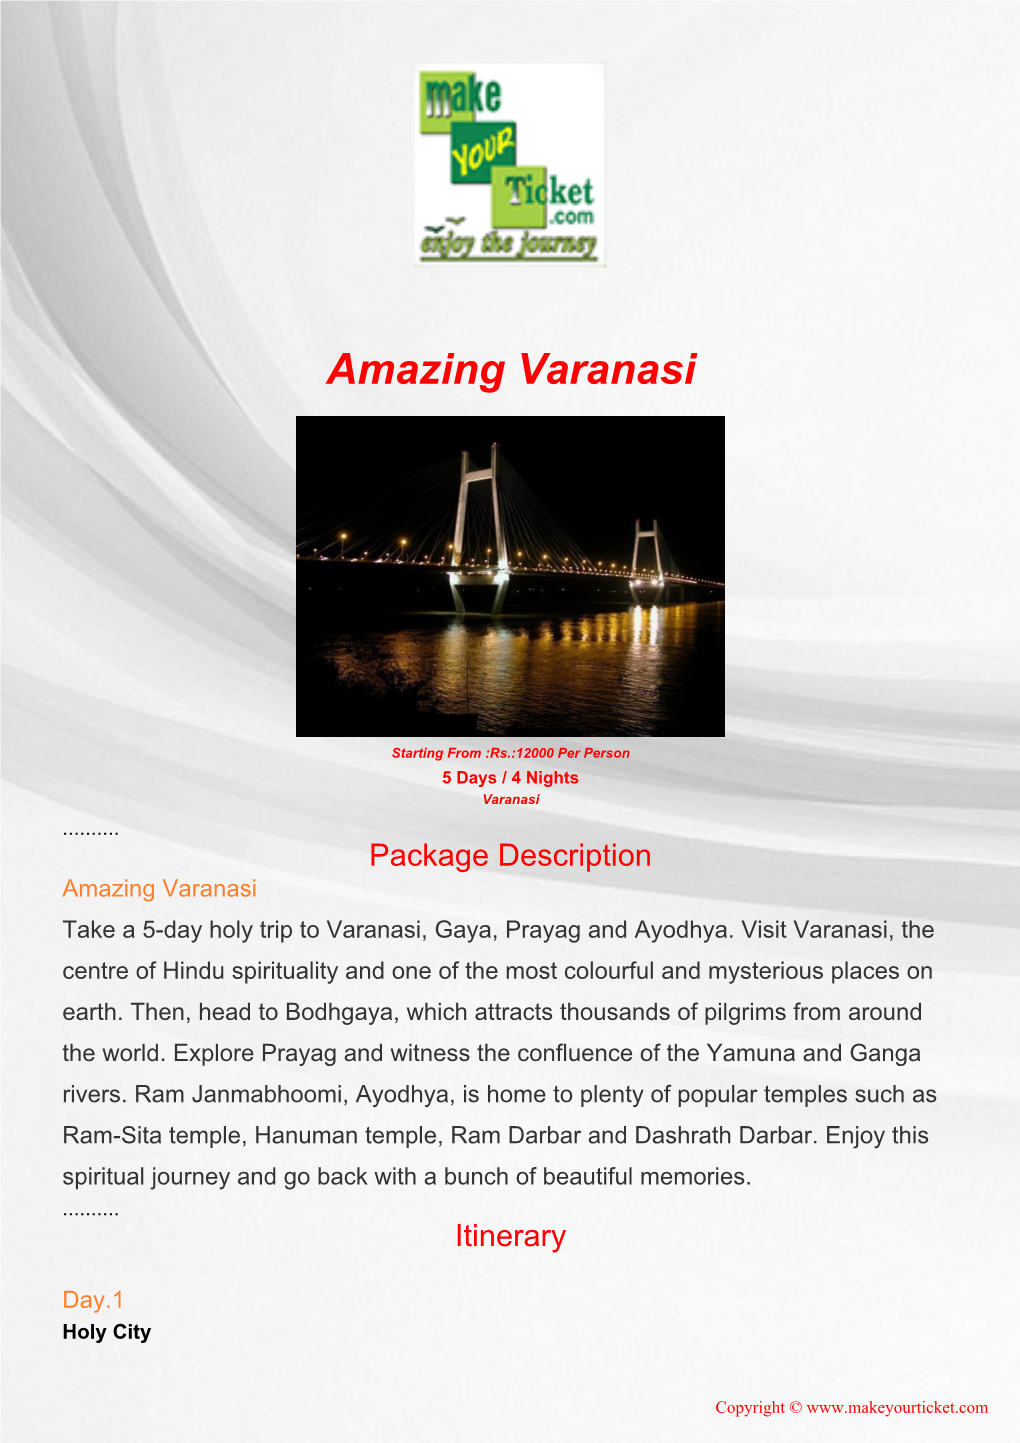 Amazing Varanasi